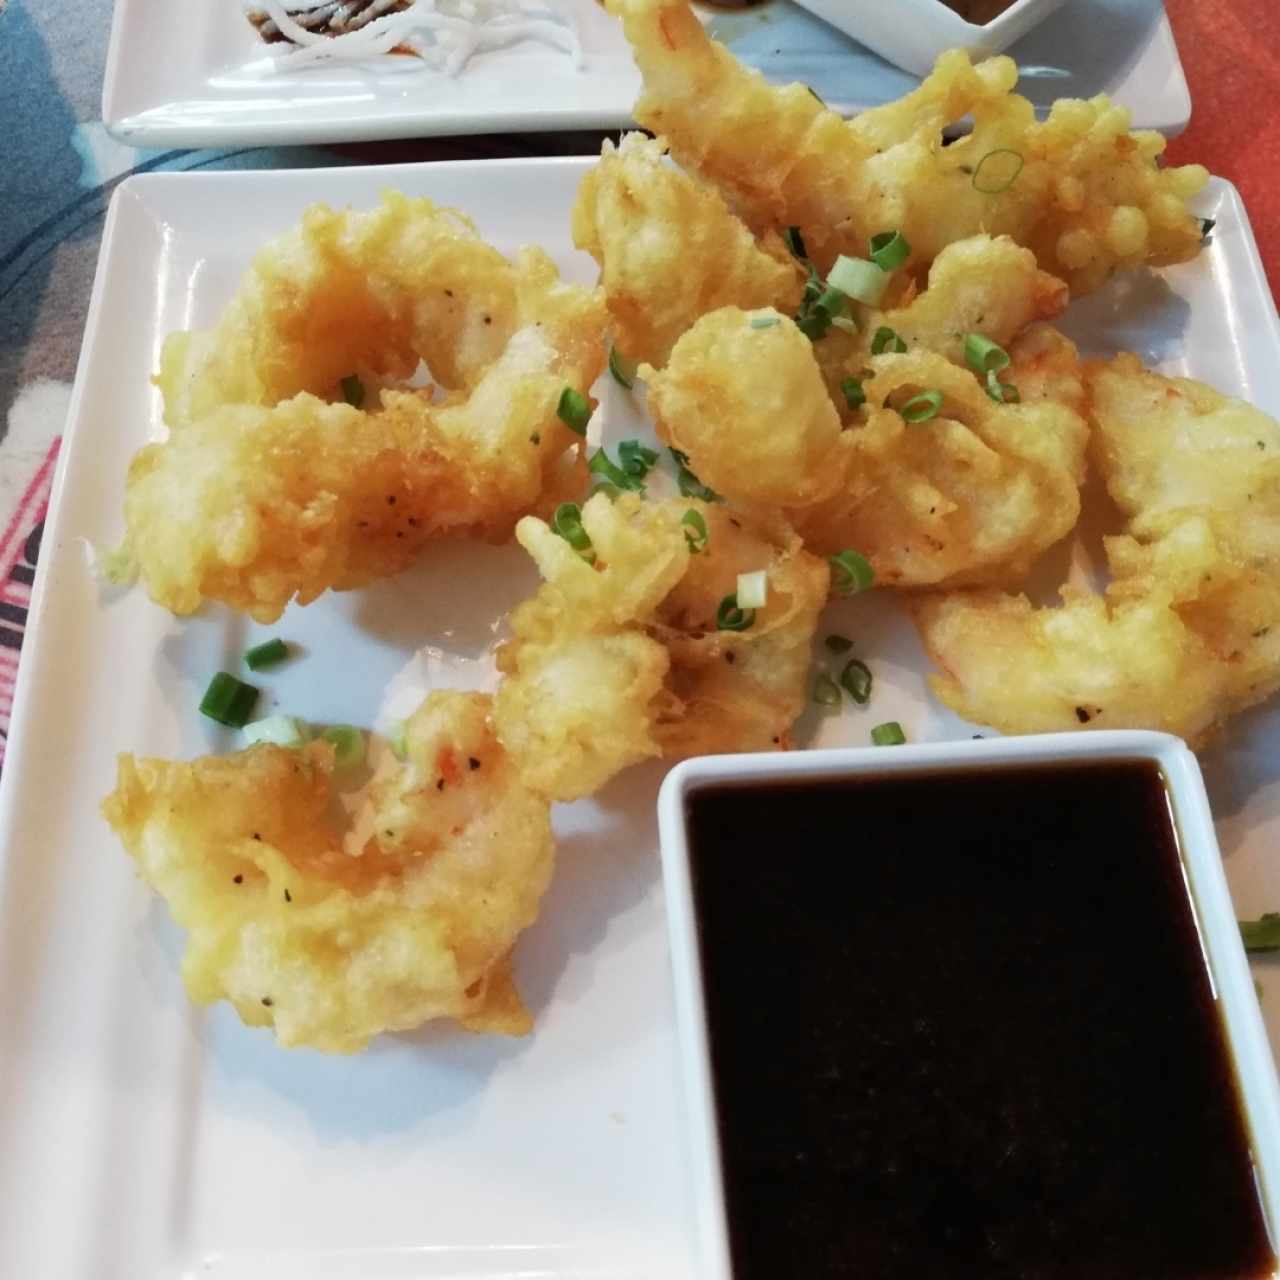 Crujientes tempuras - Ebi tempura